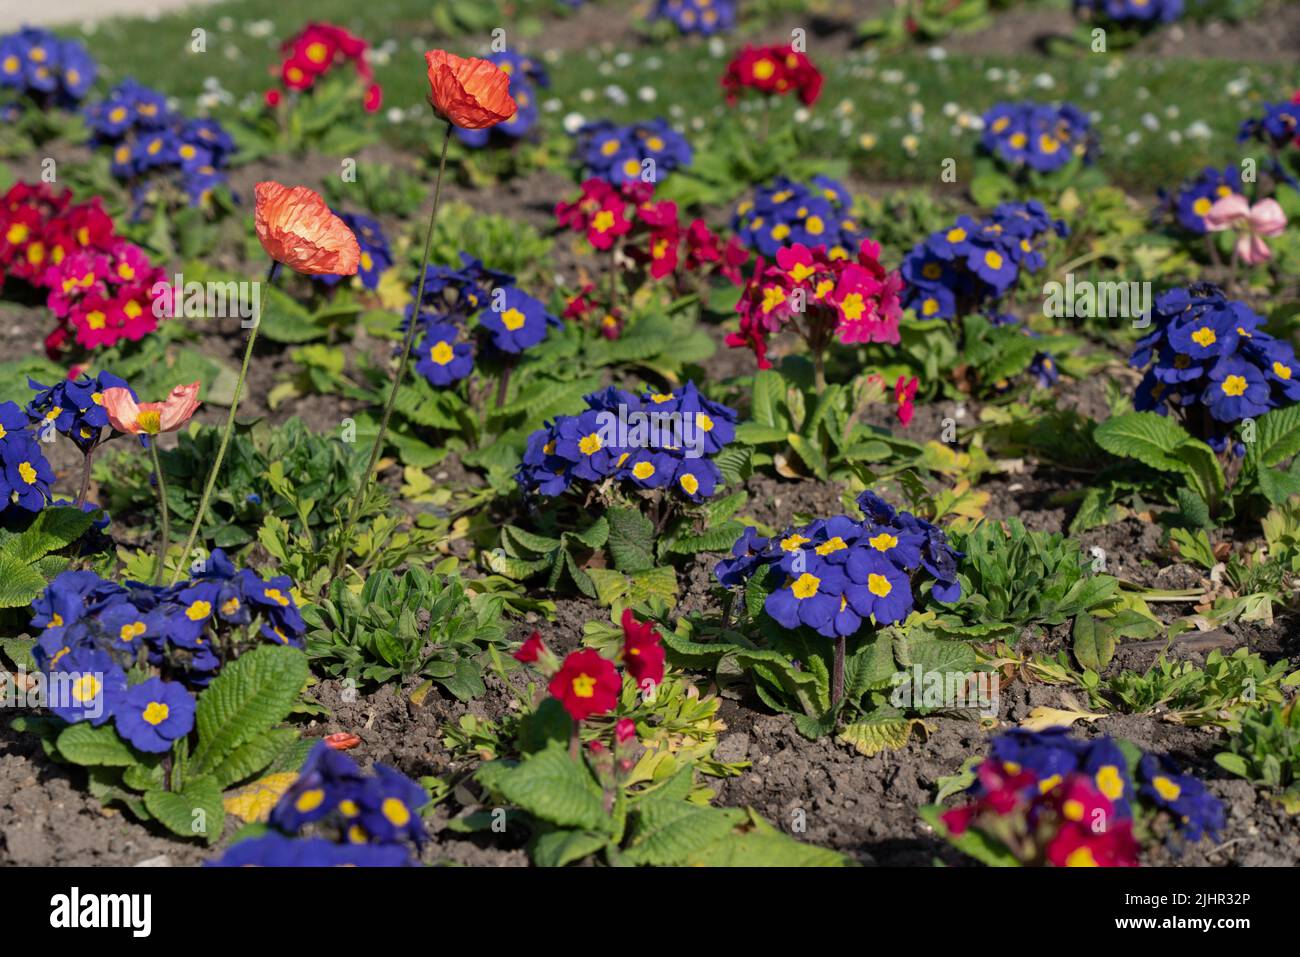 France, Ile de France region, Paris 6th arrondissement, Jardin du Luxembourg, primroses and poppies, Stock Photo